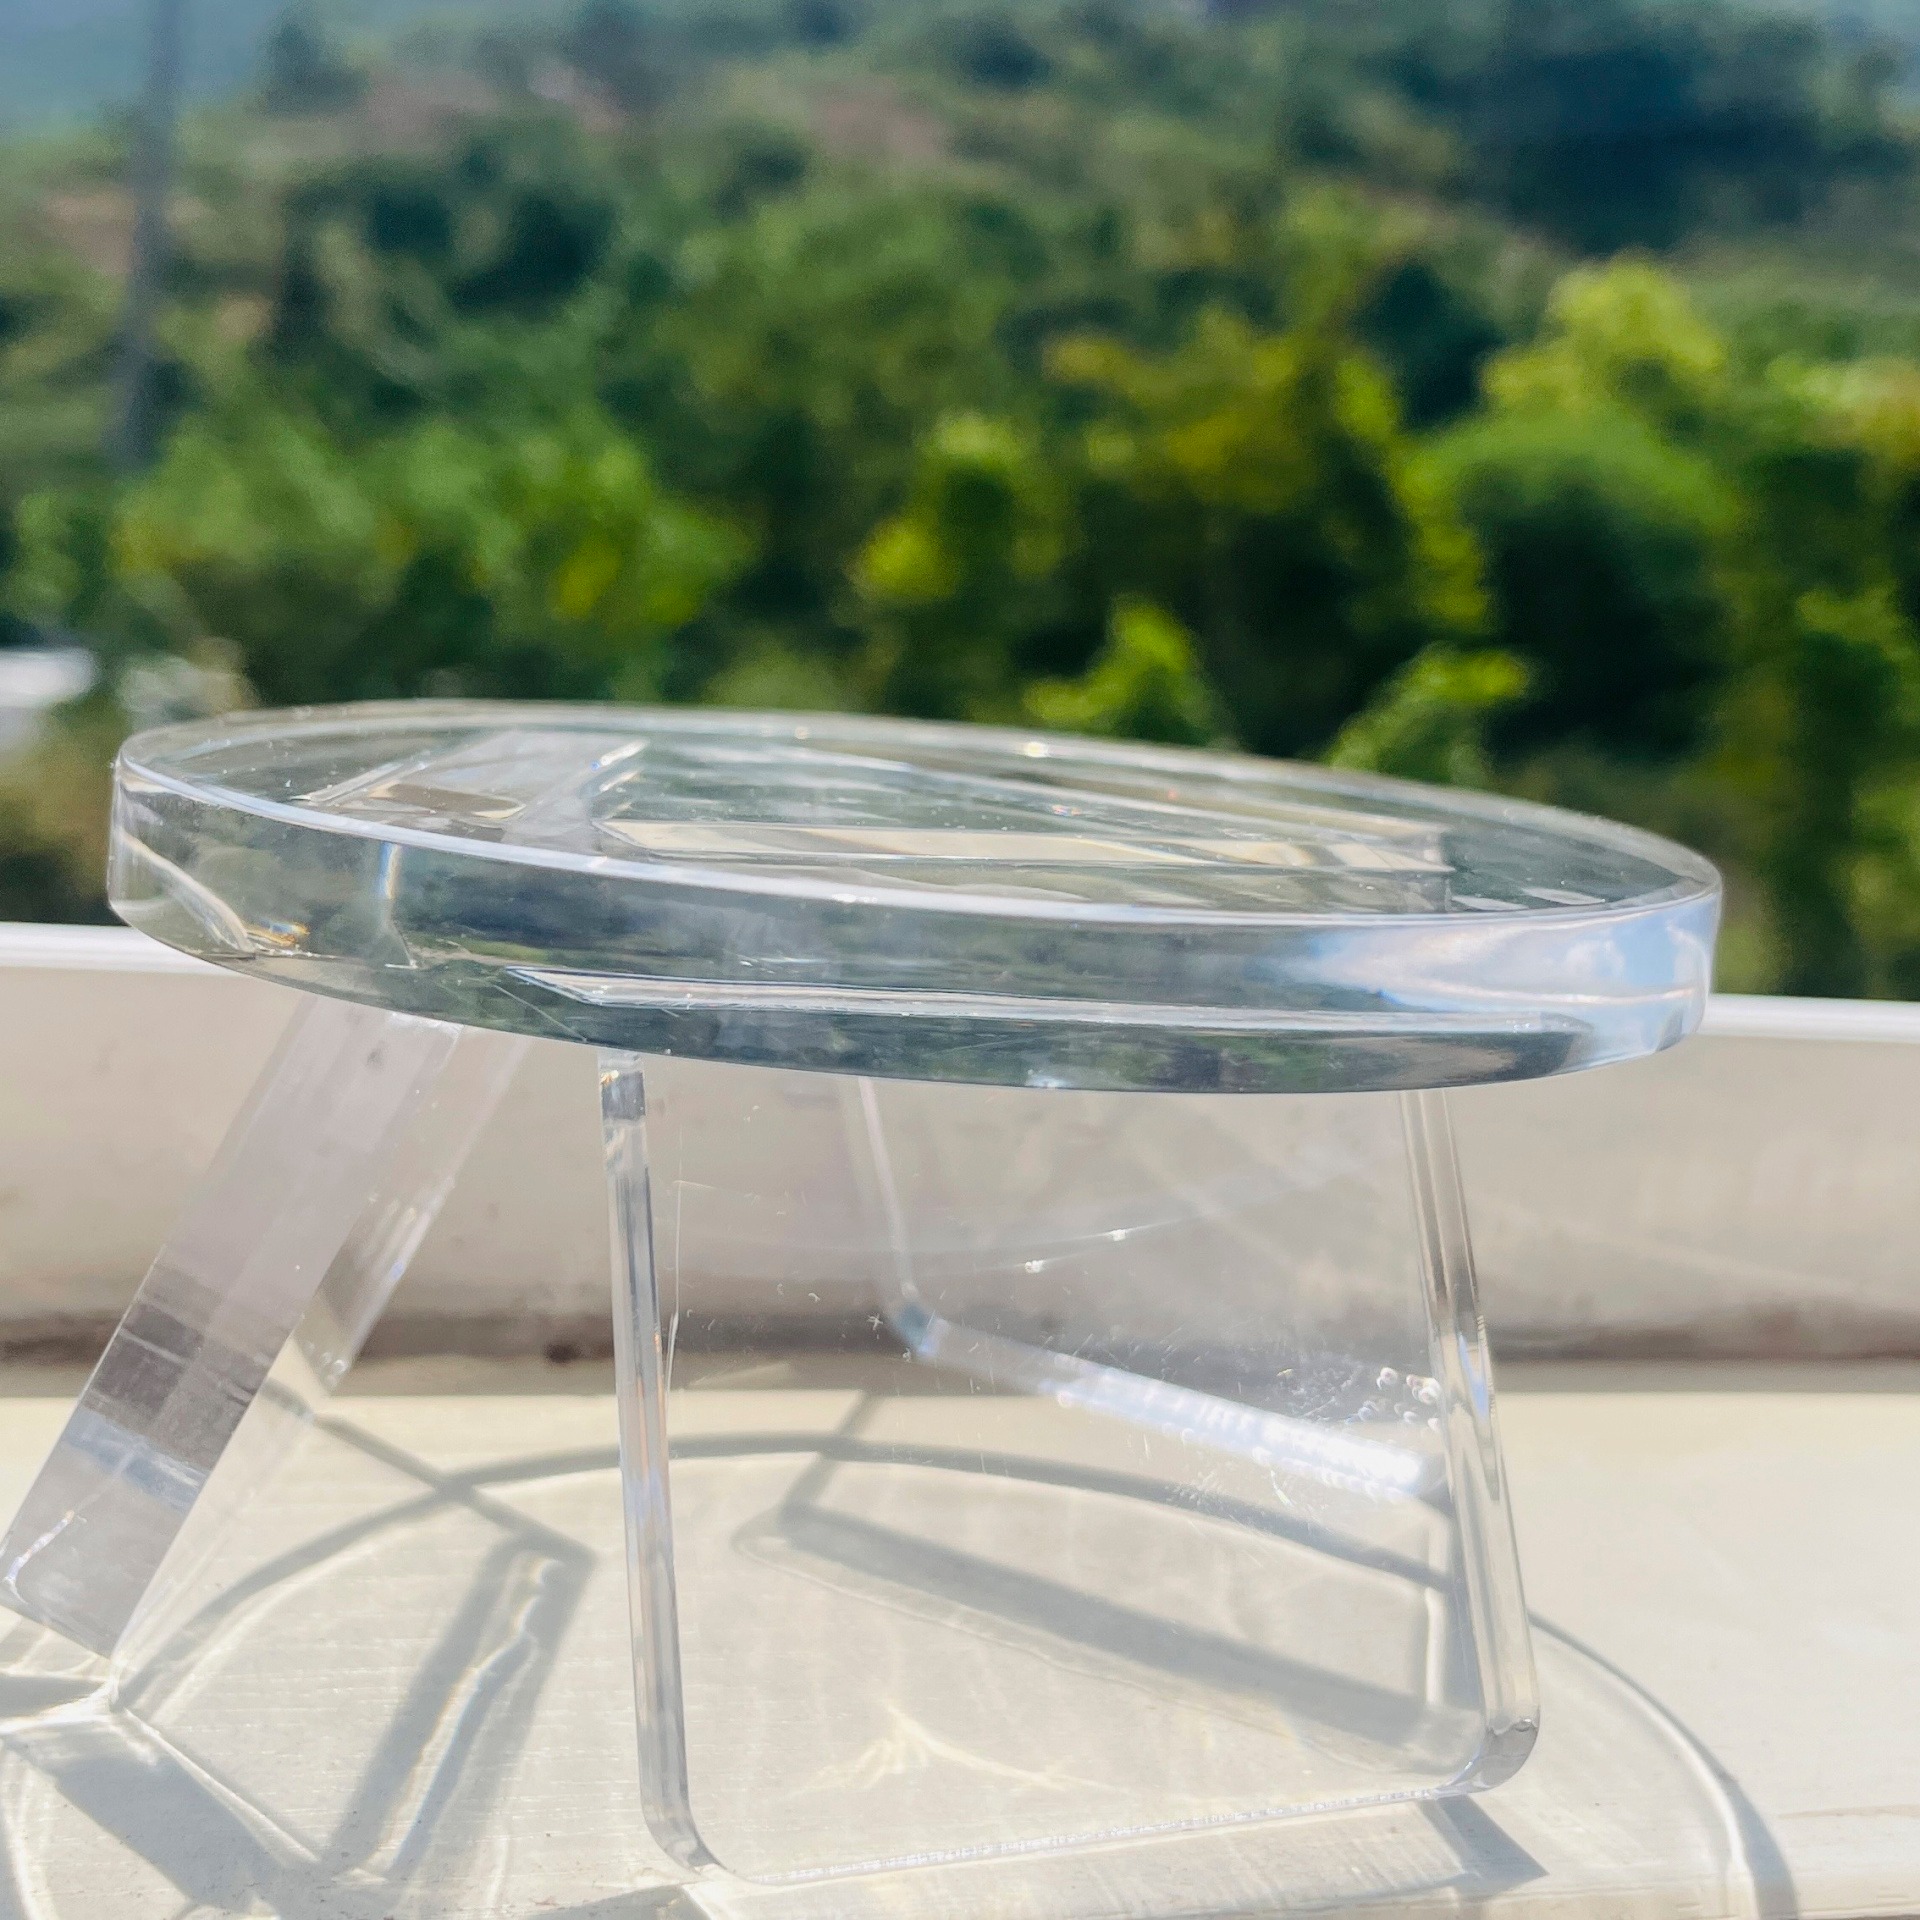 透明有机玻璃工艺品厂家 亚克力水晶奖牌 亚克力工艺品定制图片